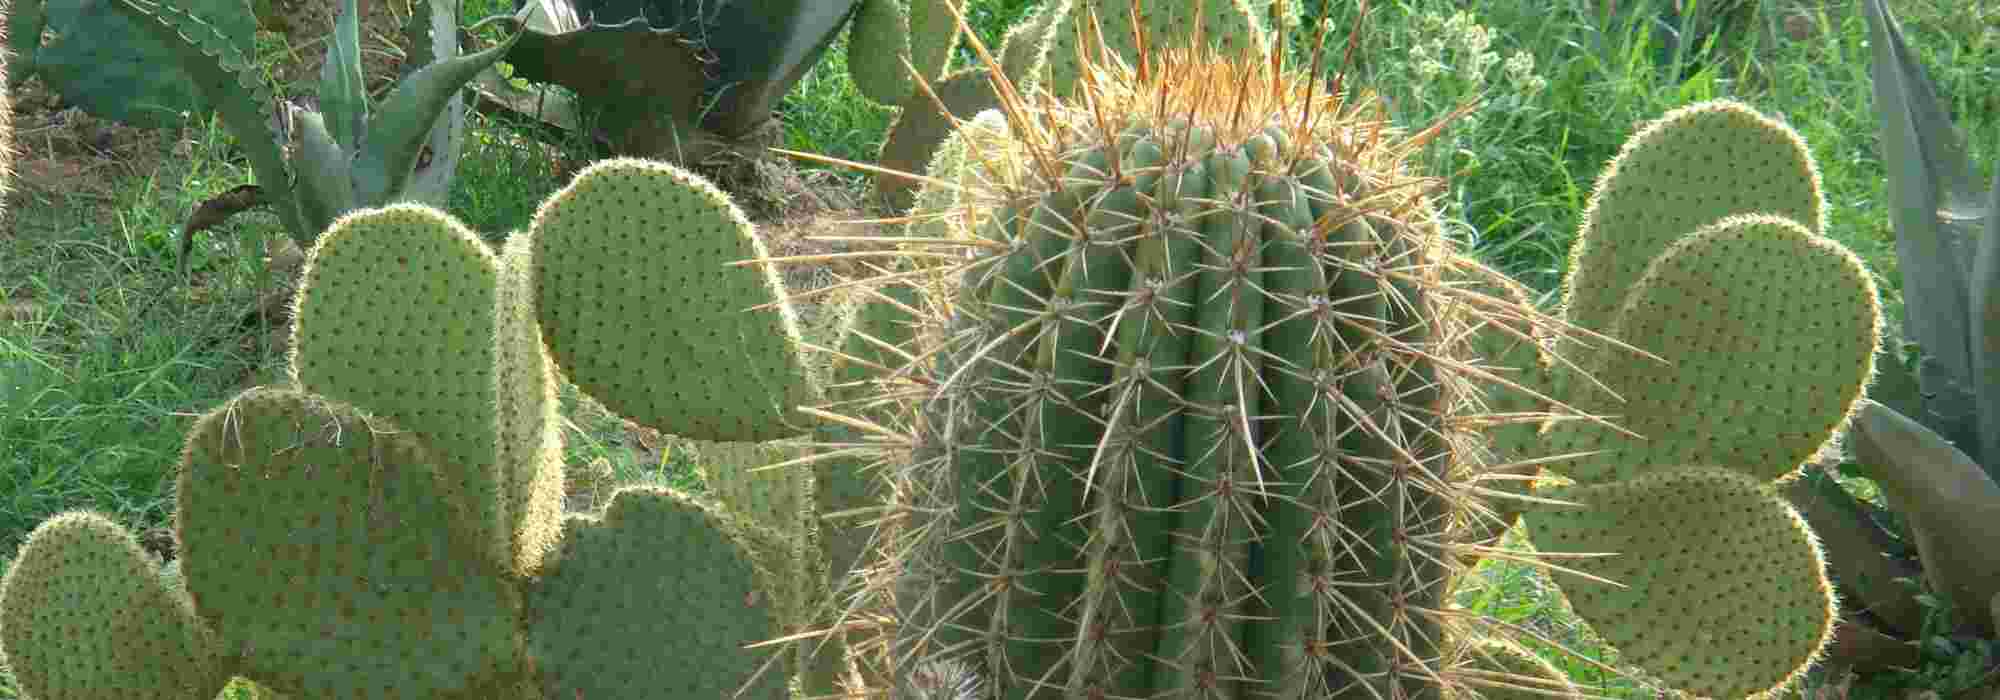 Cactus dans le jardin : nos conseils pour les mettre en valeur